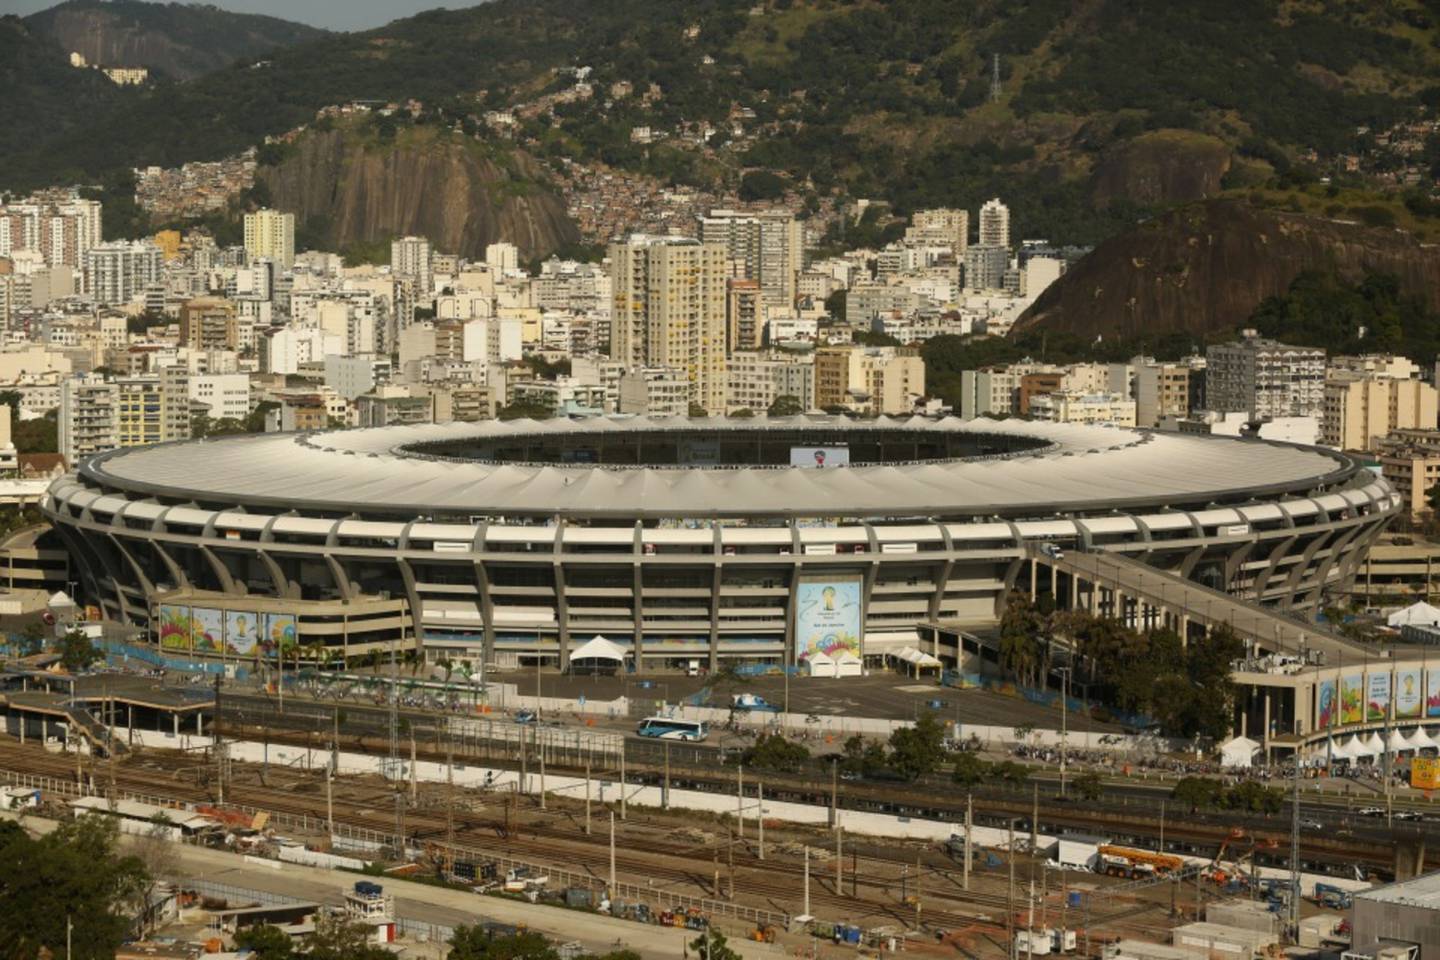 Brasil tem se posicionado como um mercado sólido em investimentos no ramo do futebol, e no último ano surpreendeu com várias repatriações de jogadores brasileiros do mercado europeu